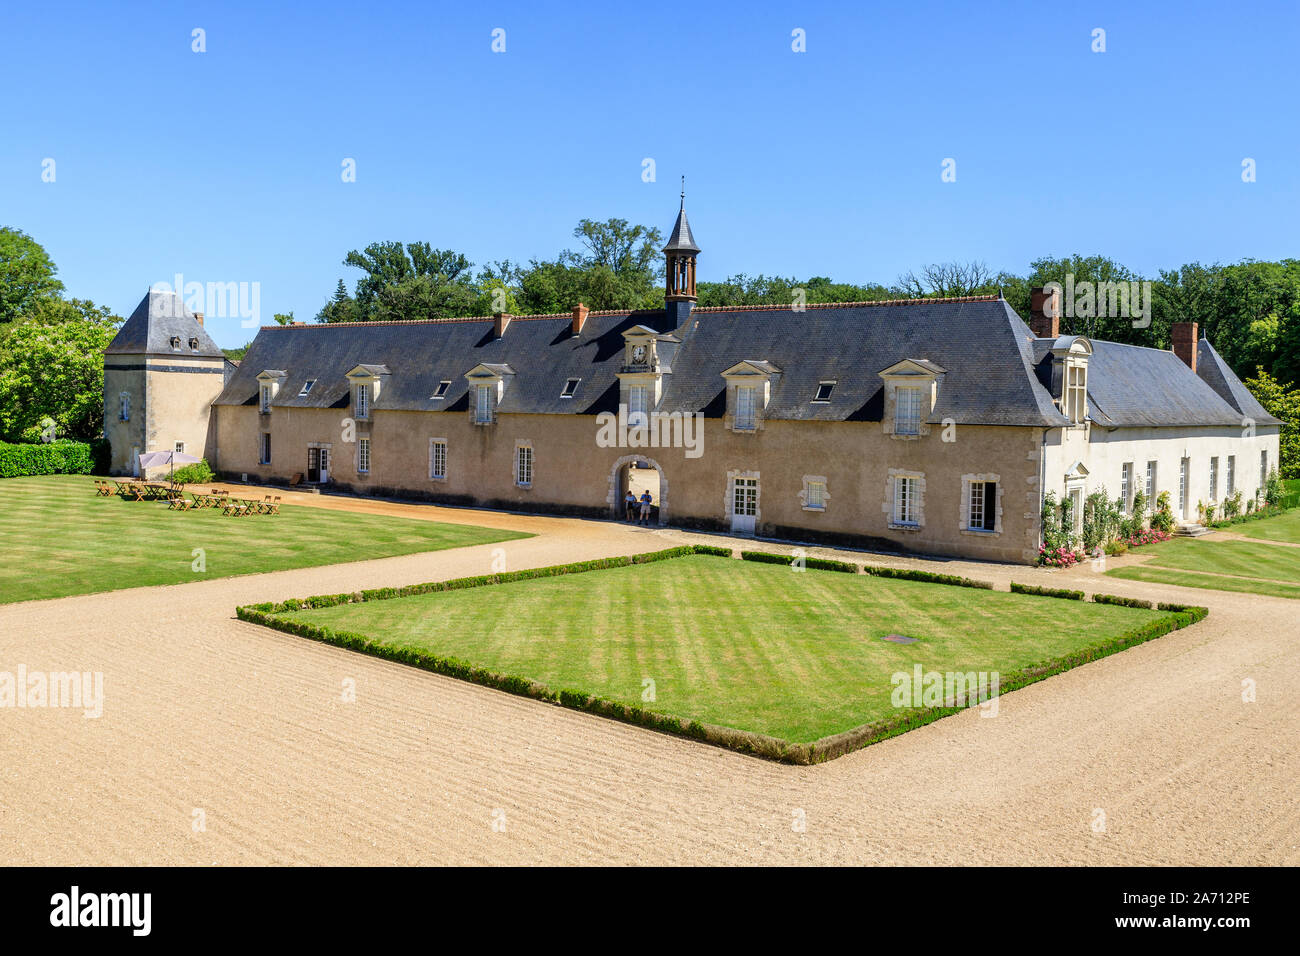 Frankreich, Maine et Loire, Loire-Tal UNESCO Weltkulturerbe, Cellettes, Chateau de Beauregard, Park und Gärten und Orangerien vom 17 centu Stockfoto